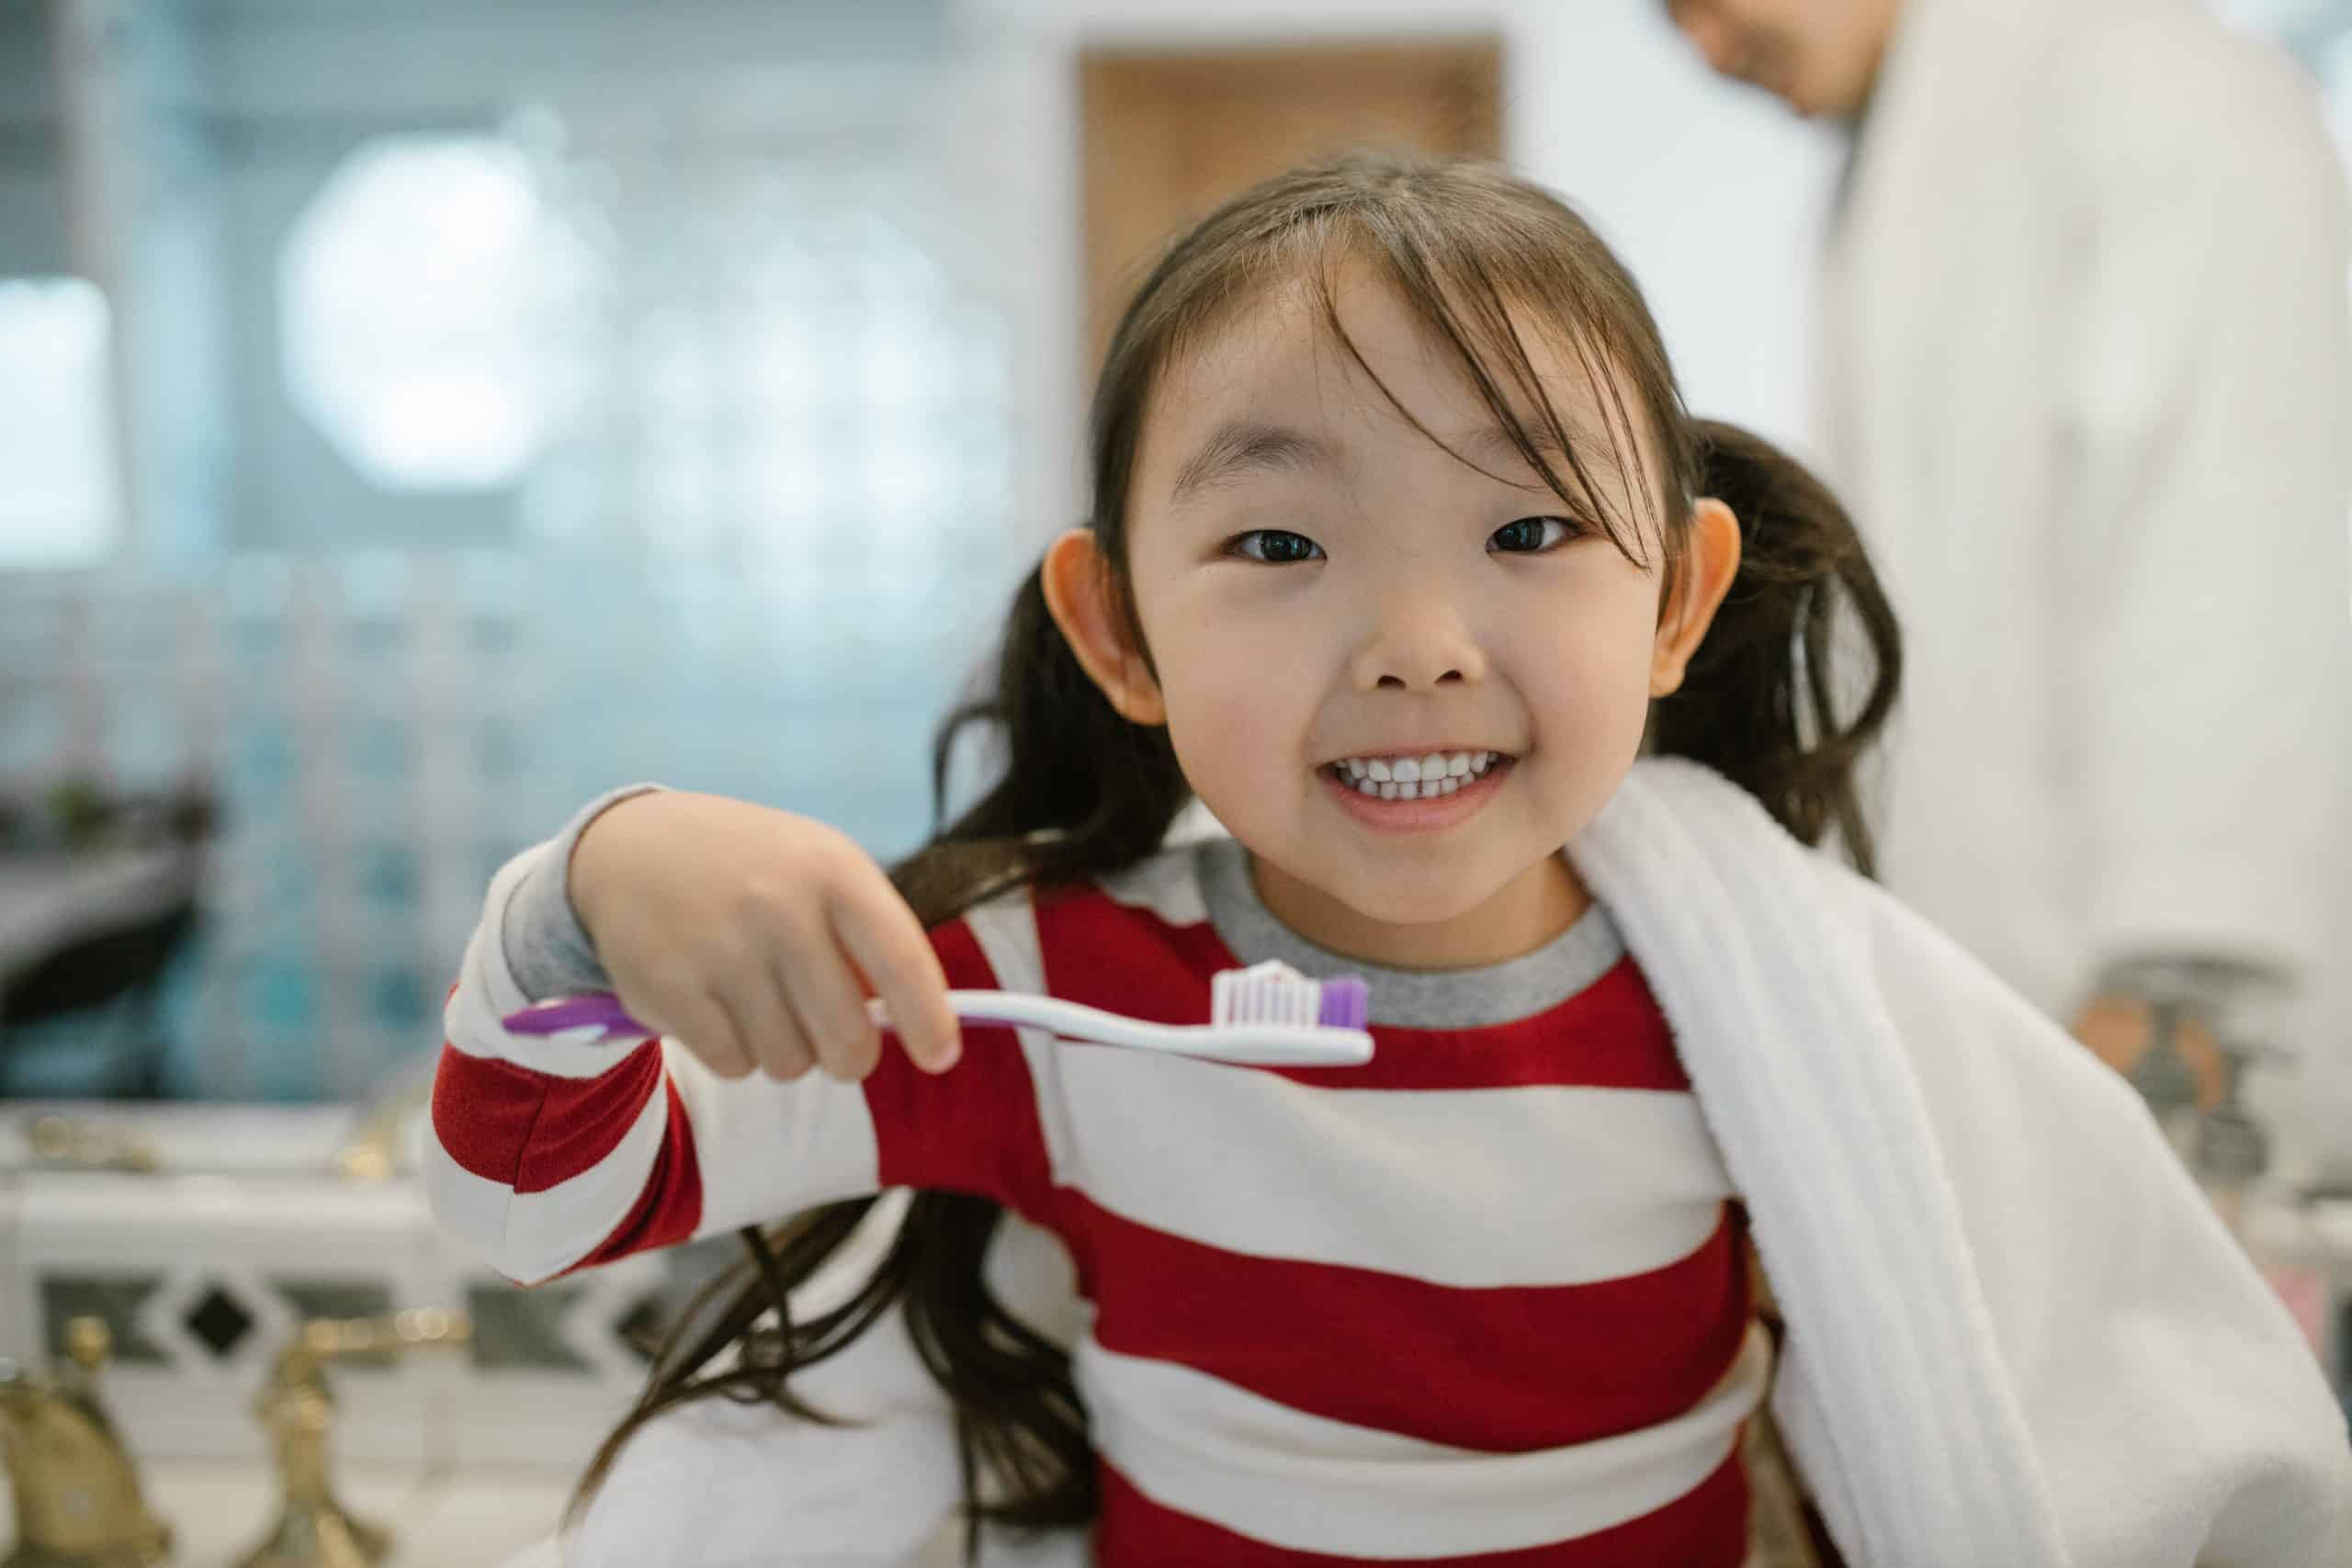 Child in Marietta Georgia brushing her teeth